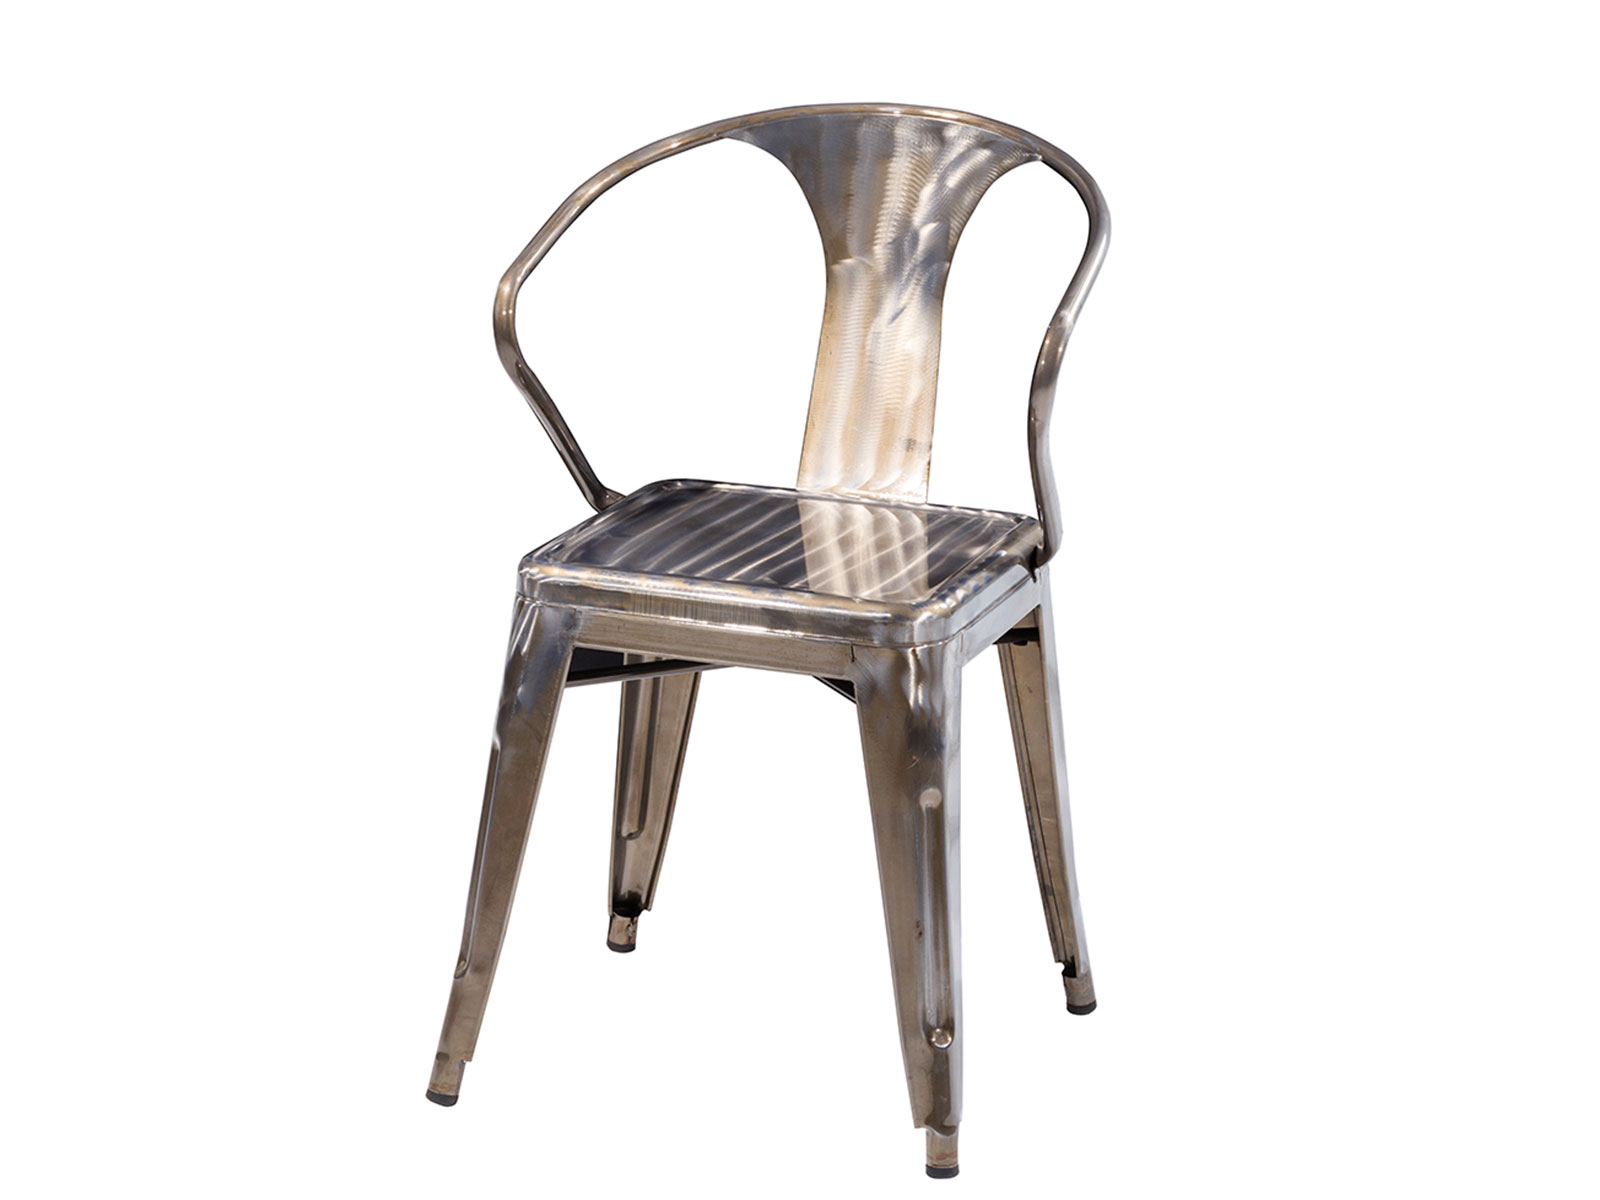 CEGS-11 Rustique Chair